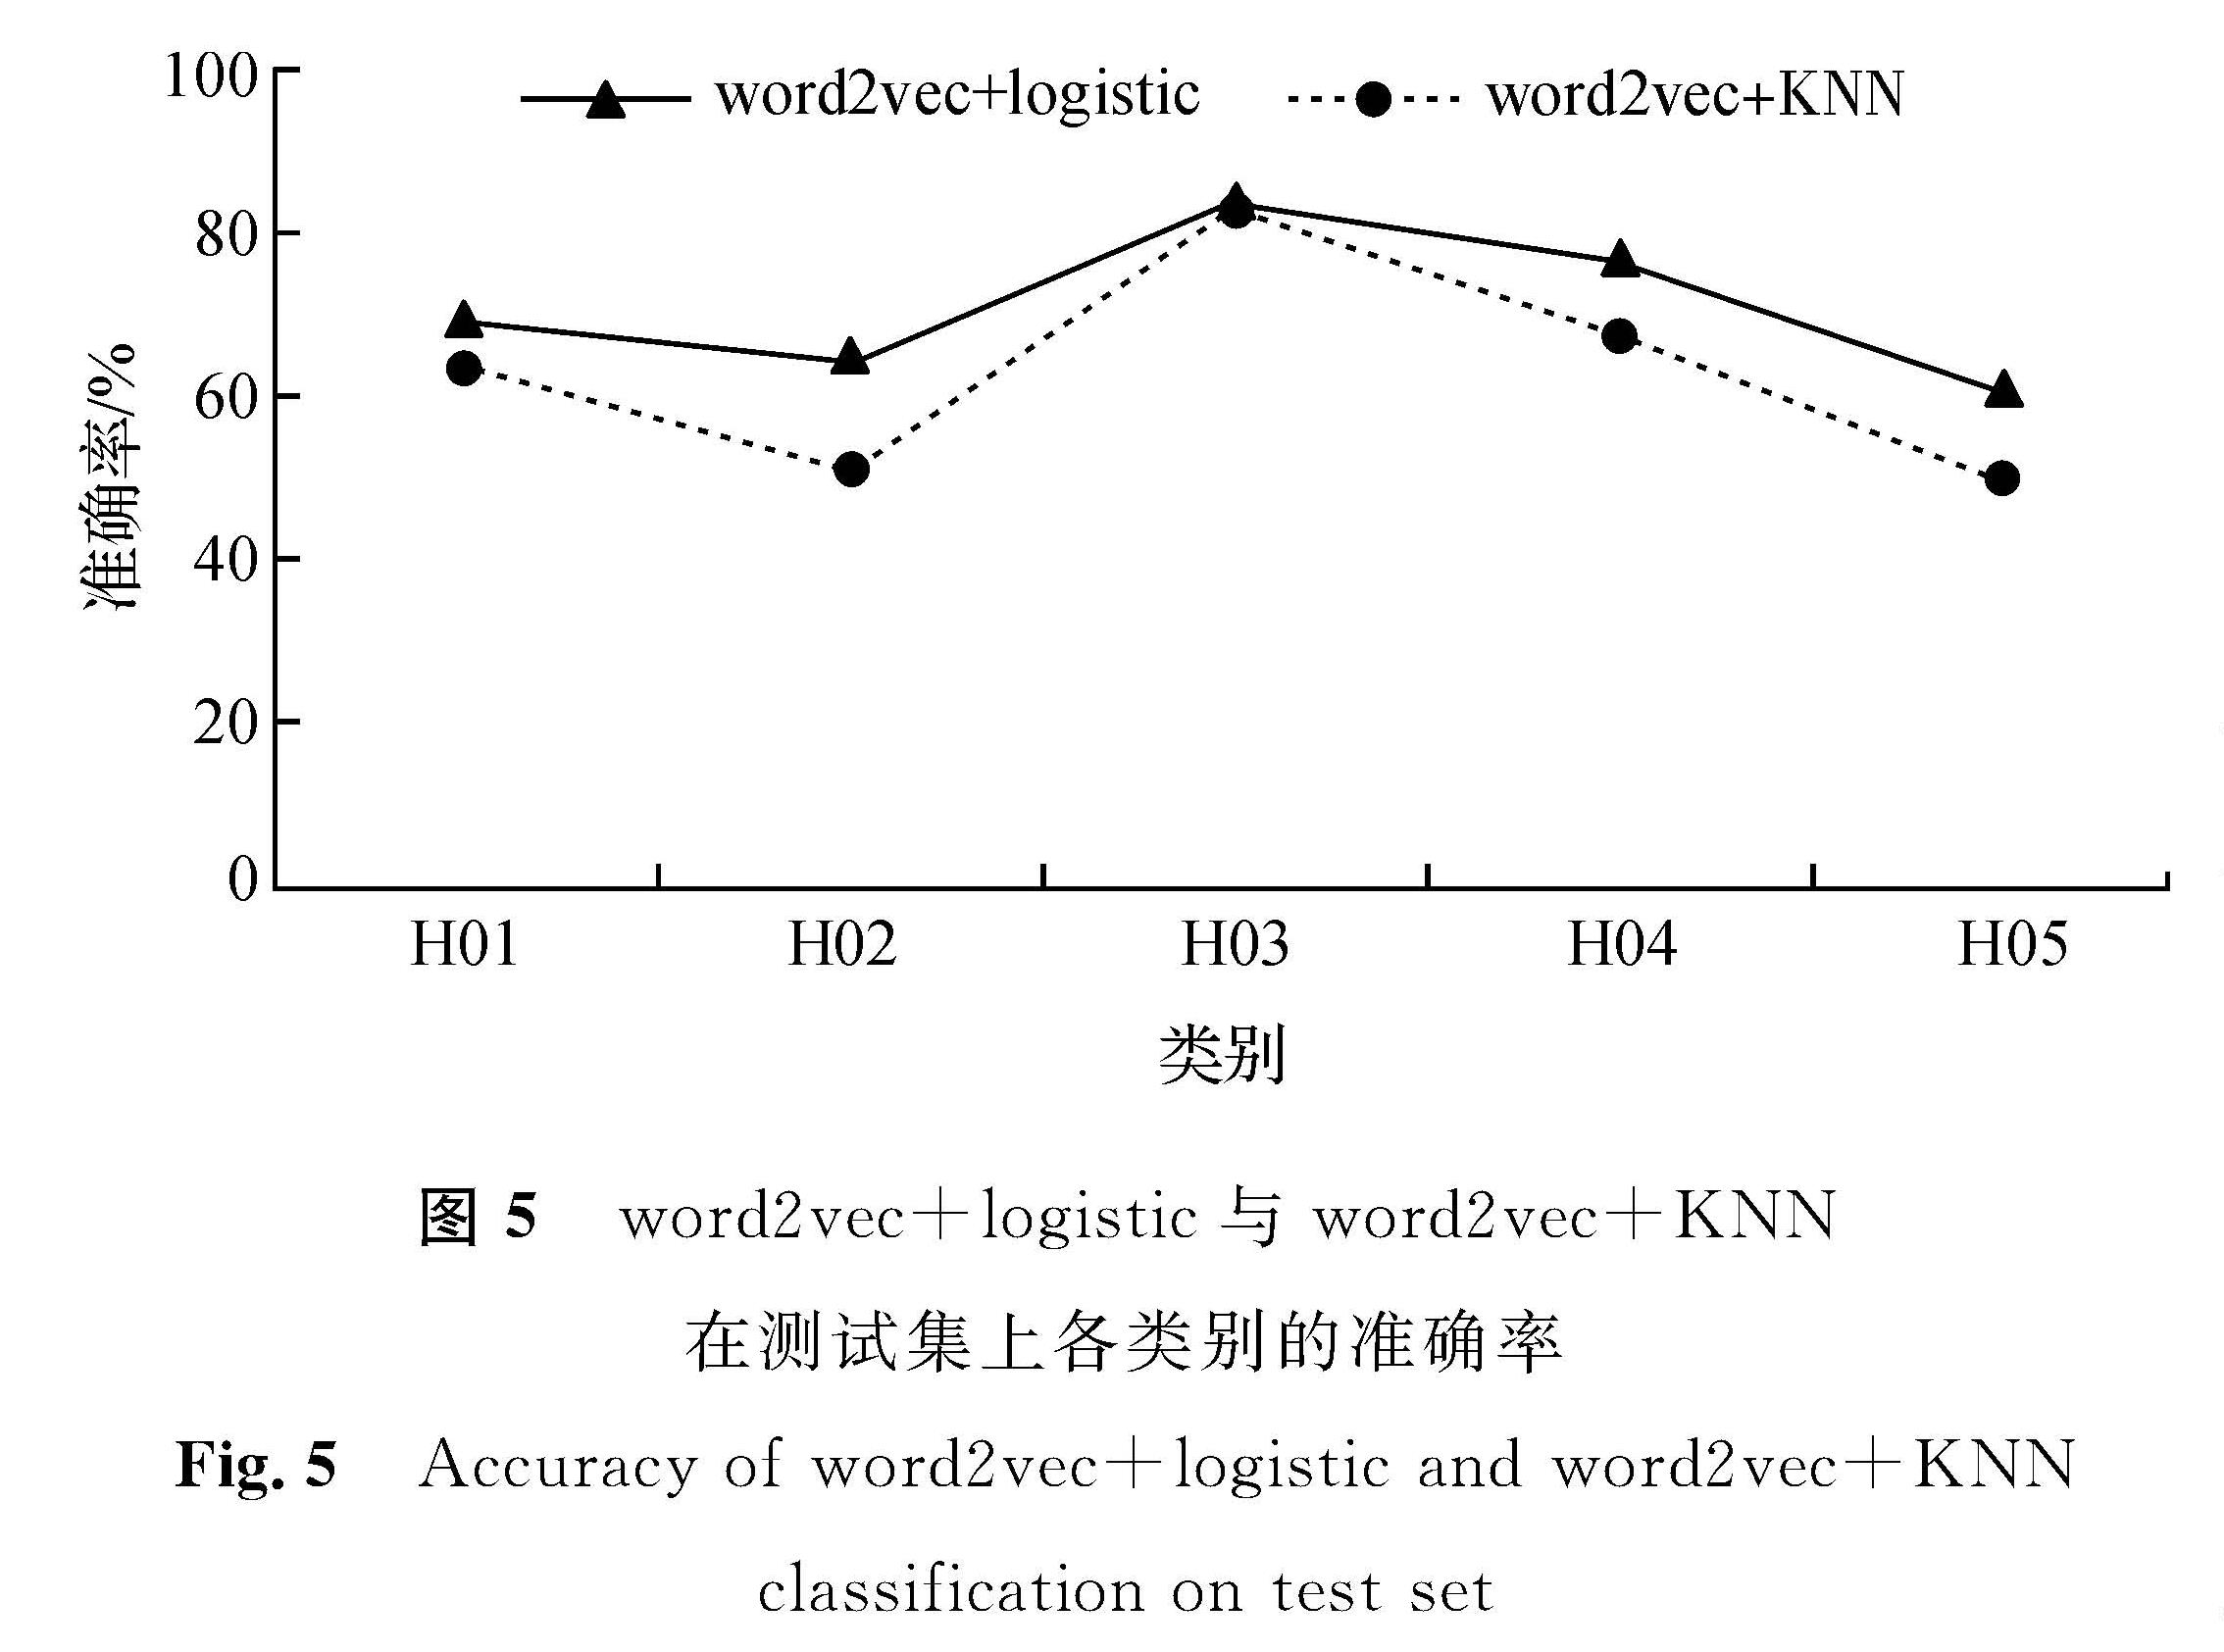 图5 word2vec+logistic与word2vec+KNN在测试集上各类别的准确率<br/>Fig.5 Accuracy of word2vec+logistic and word2vec+KNN classification on test set